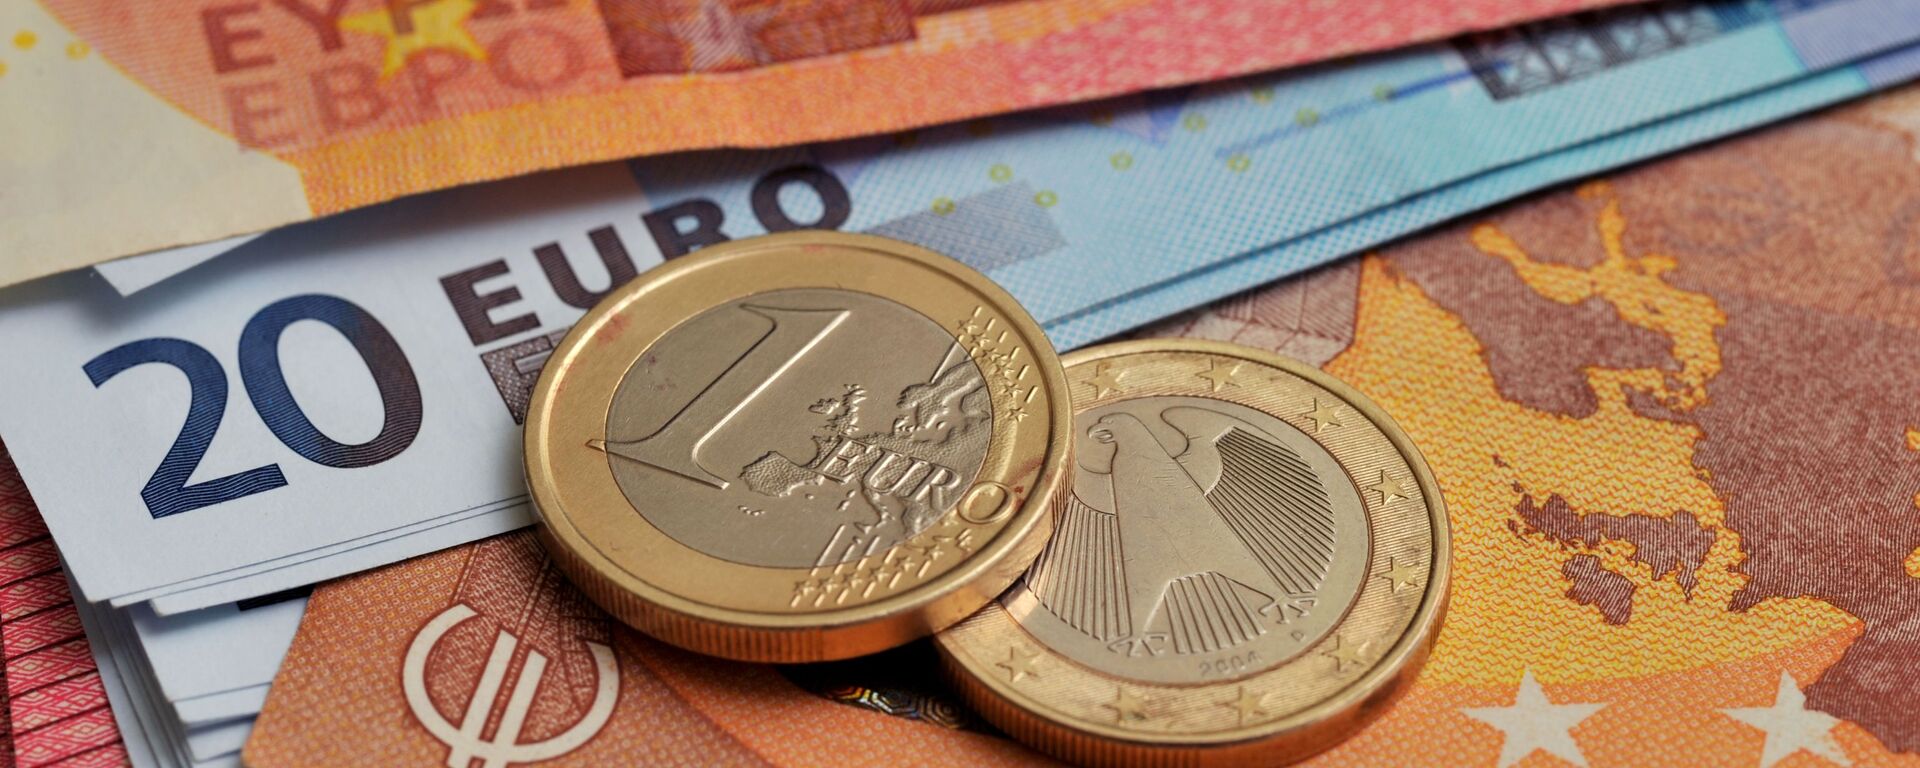 Монеты номиналом 1 евро на фоне банкнот номиналом 10 и 20 евро.  - Sputnik Таджикистан, 1920, 14.01.2021